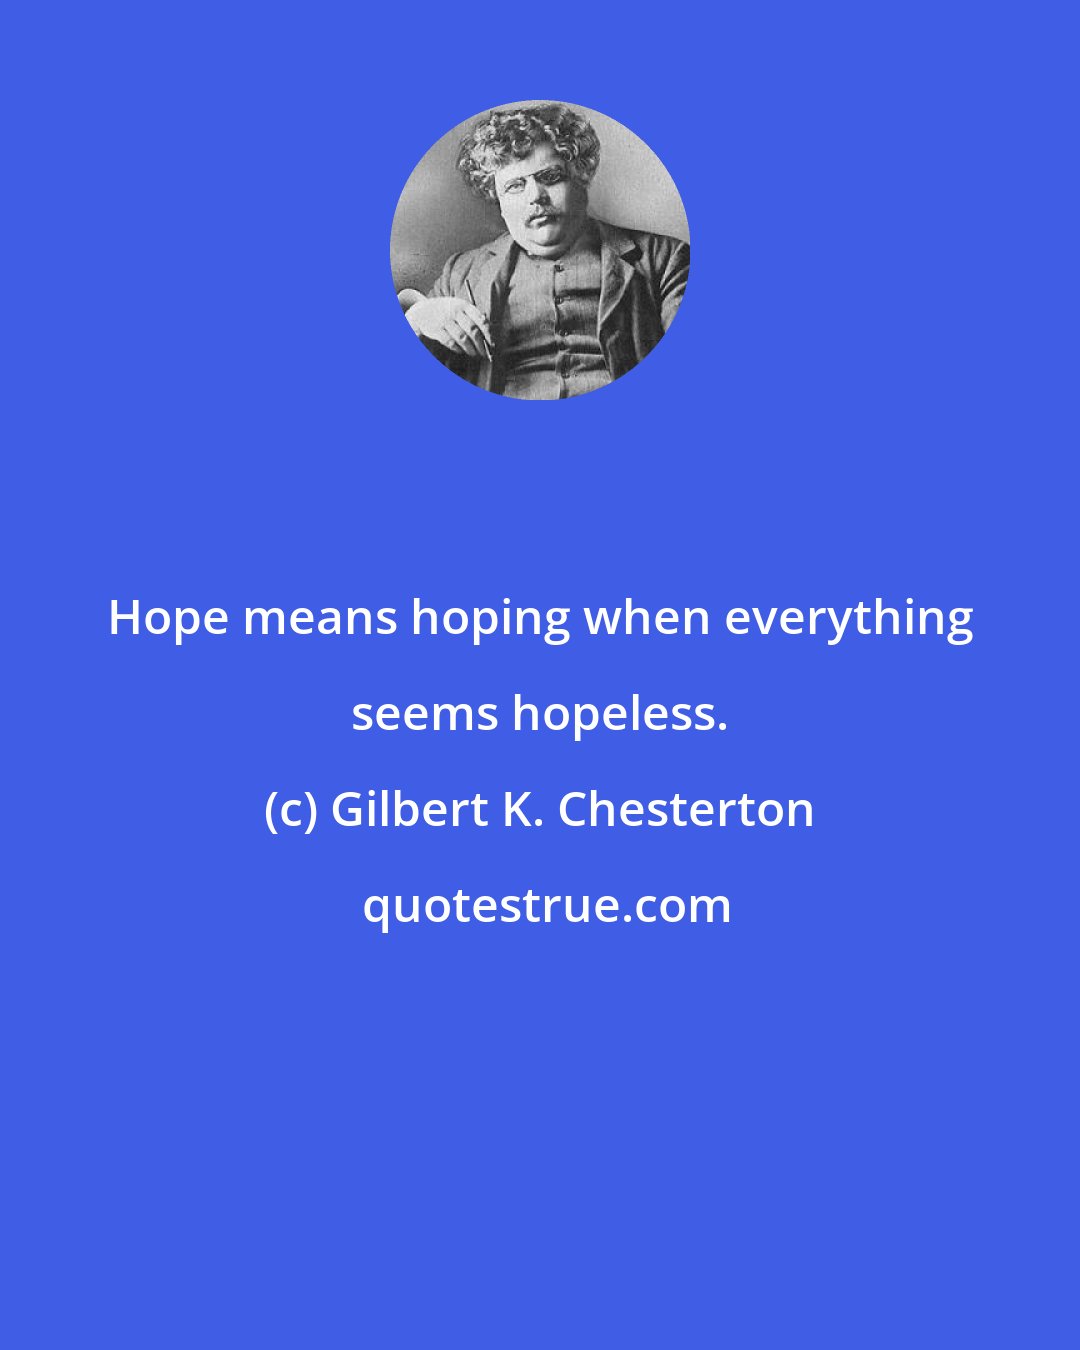 Gilbert K. Chesterton: Hope means hoping when everything seems hopeless.